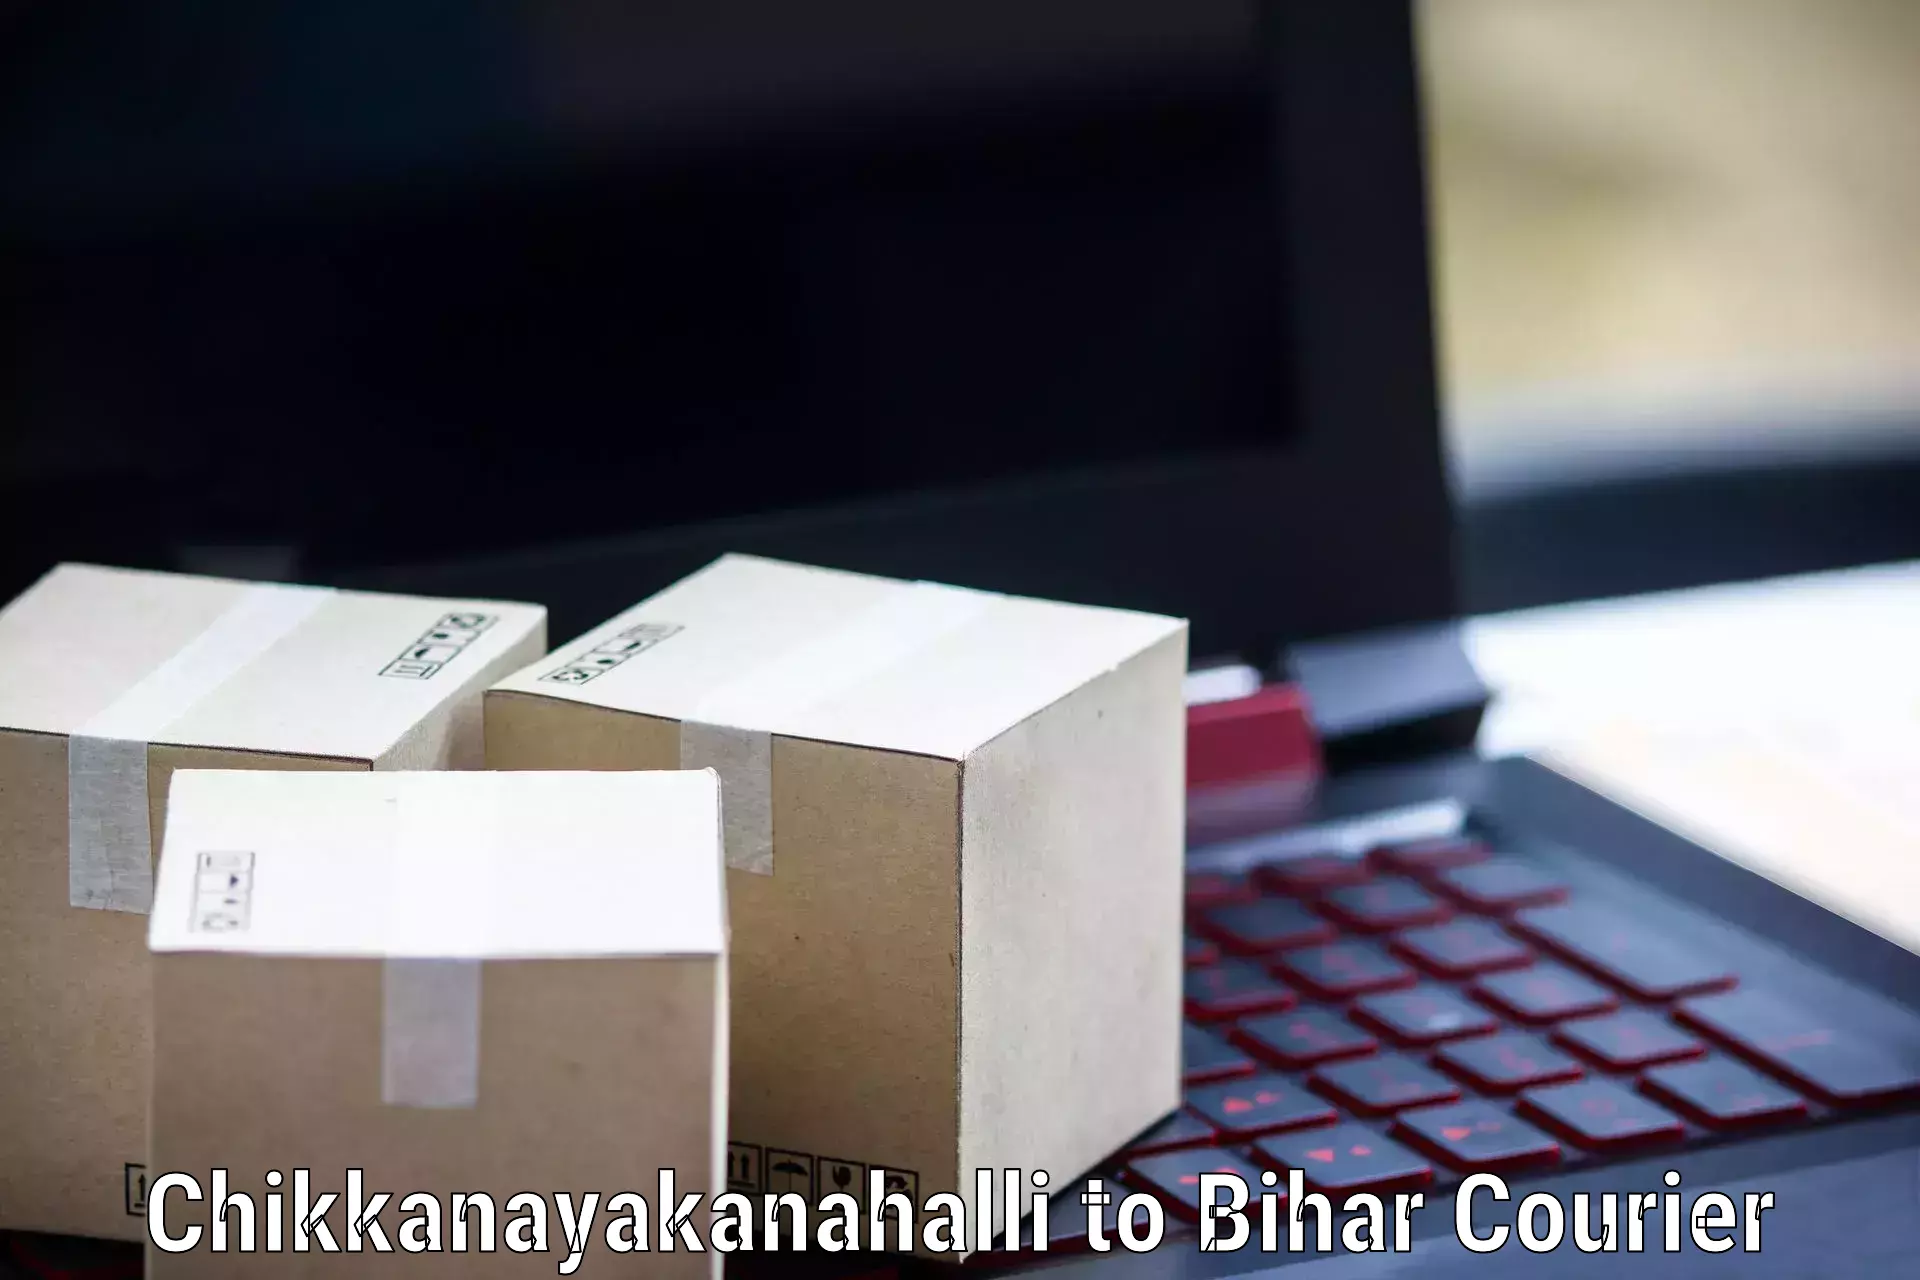 Premium courier services in Chikkanayakanahalli to Darbhanga